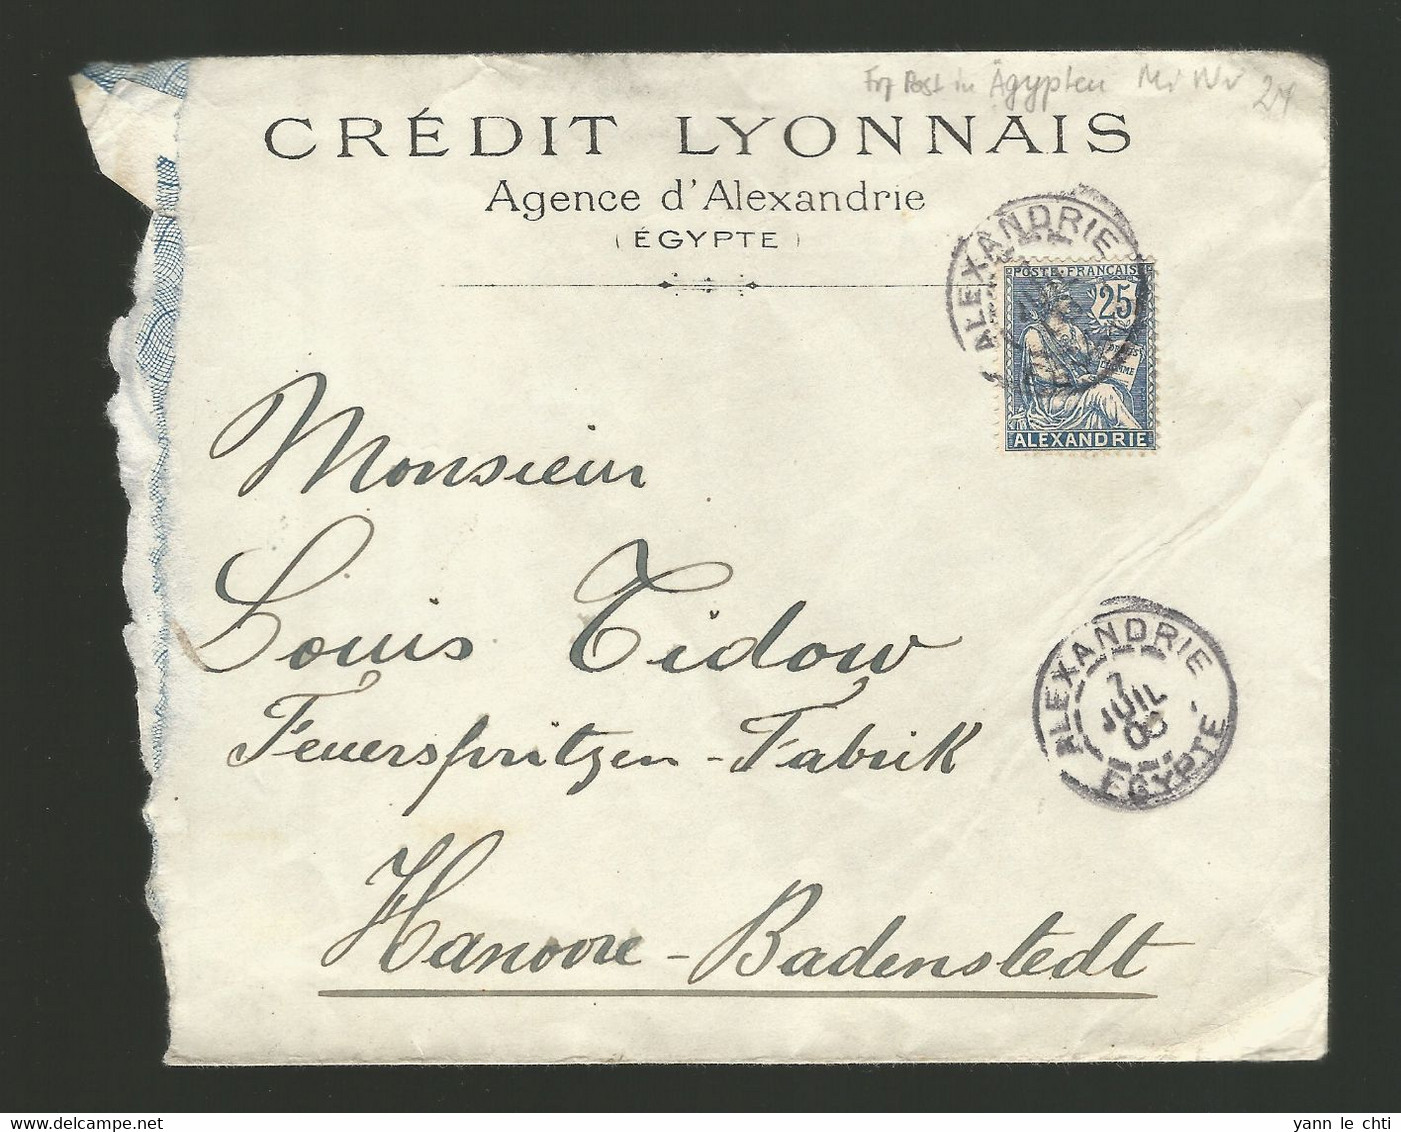 Brief Enveloppe Bank Banque Credit Lyonnais Alexandrie Egypte 1906 Pour Hannover Badenstedt Feuerspritzen Fabrik - Lettres & Documents